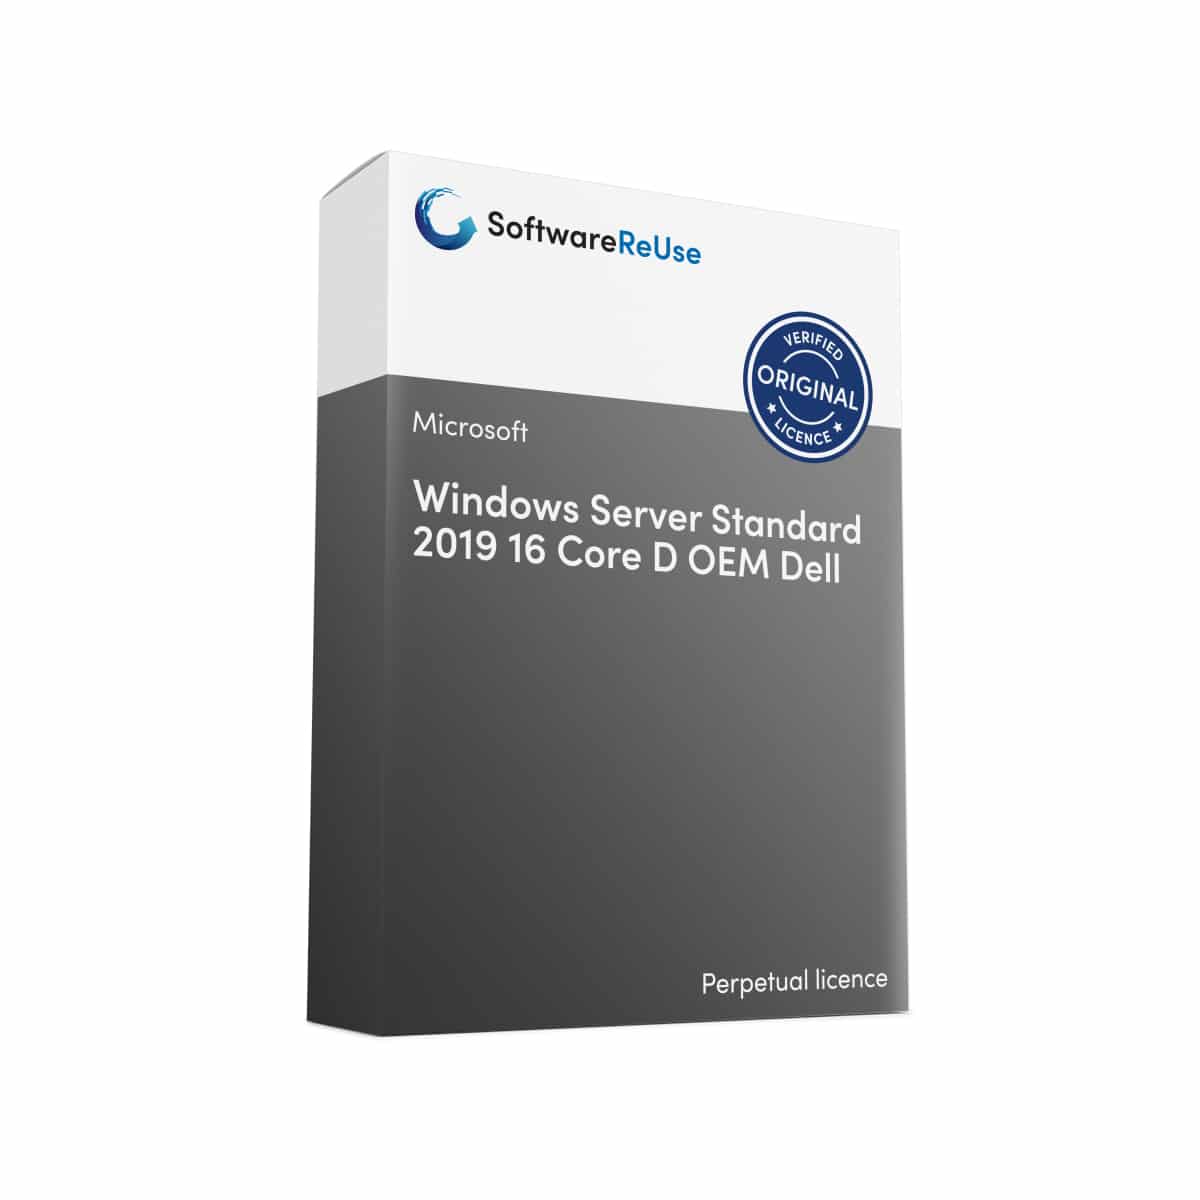 Windows Server Standard 2019 16 Core D OEM Dell – EN